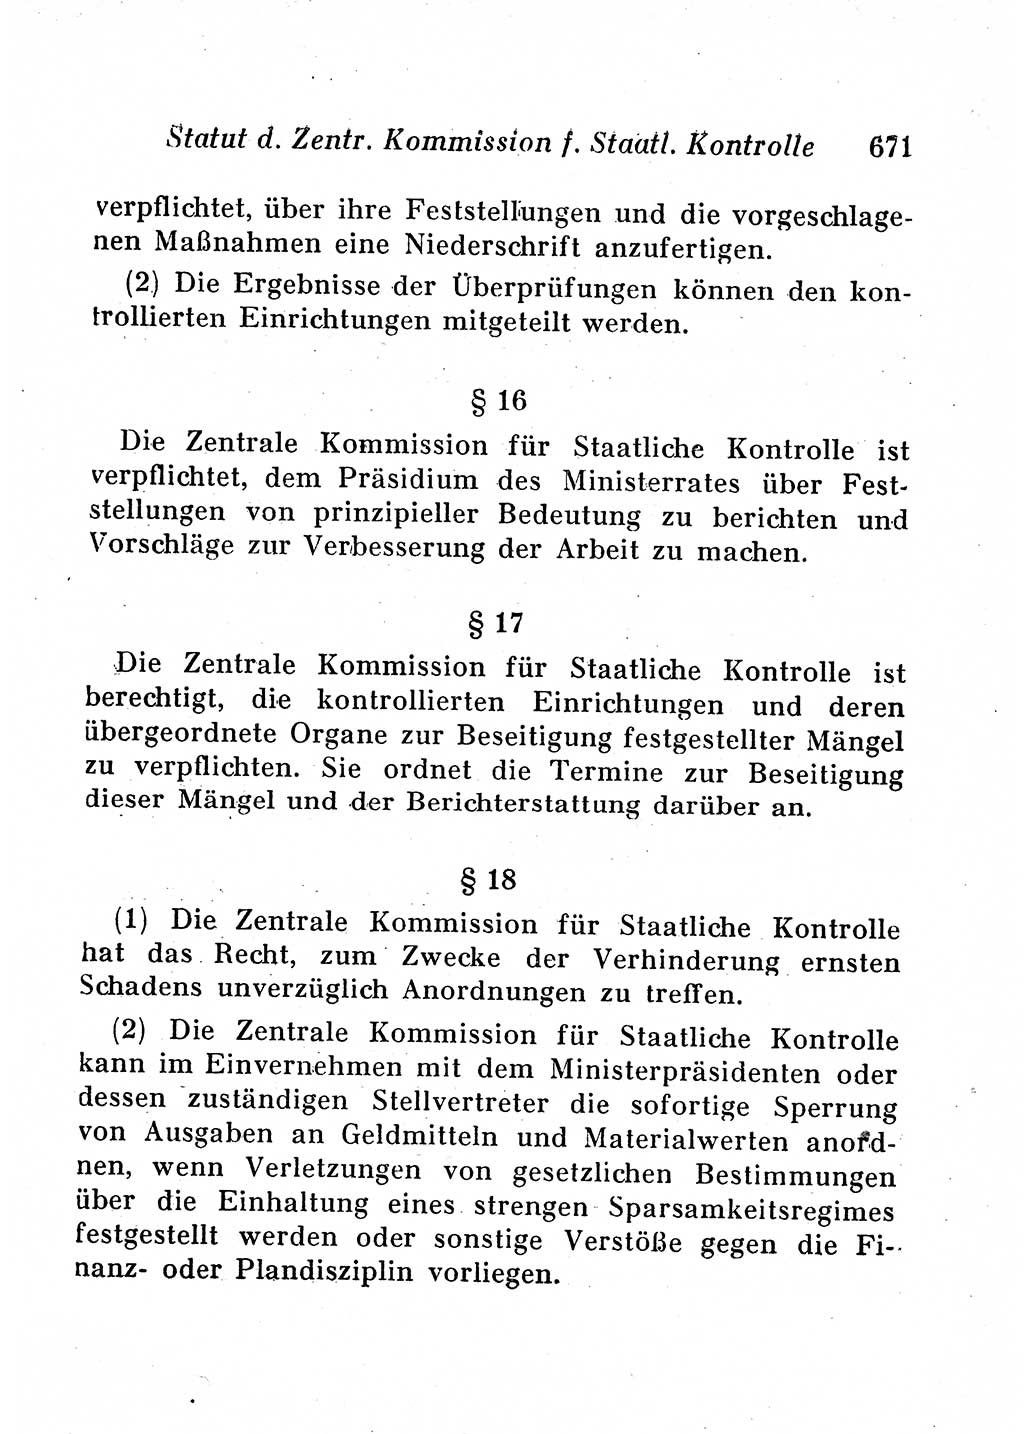 Staats- und verwaltungsrechtliche Gesetze der Deutschen Demokratischen Republik (DDR) 1958, Seite 671 (StVerwR Ges. DDR 1958, S. 671)